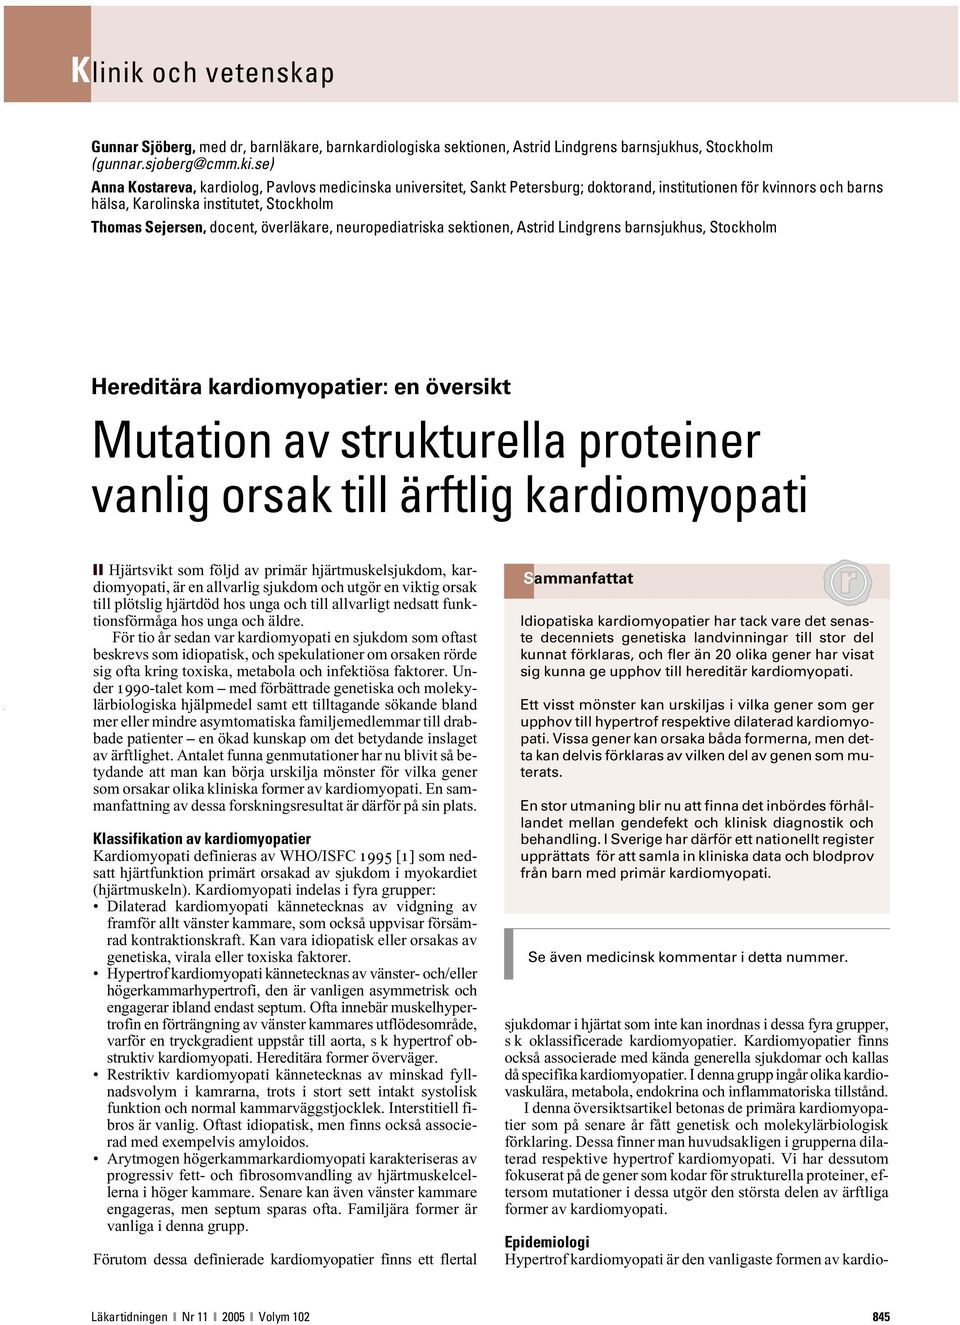 överläkare, neuropediatriska sektionen, Astrid Lindgrens barnsjukhus, Stockholm Hereditära kardiomyopatier: en översikt Mutation av strukturella proteiner vanlig orsak till ärftlig kardiomyopati